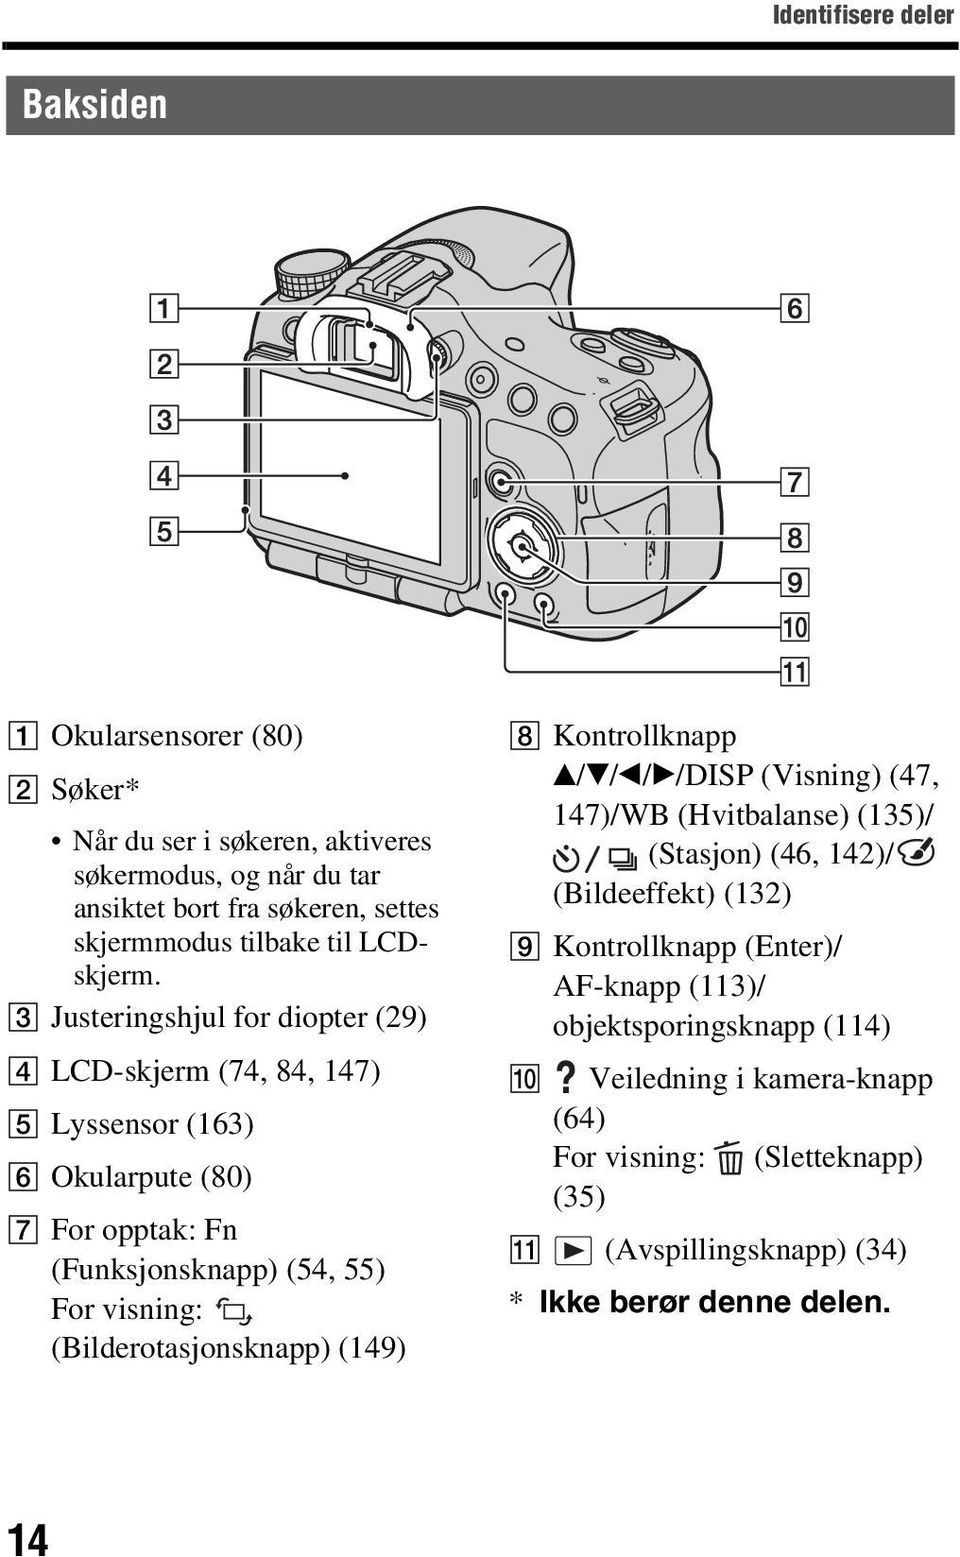 C Justeringshjul for diopter (29) D LCD-skjerm (74, 84, 147) E Lyssensor (163) F Okularpute (80) G For opptak: Fn (Funksjonsknapp) (54, 55) For visning: